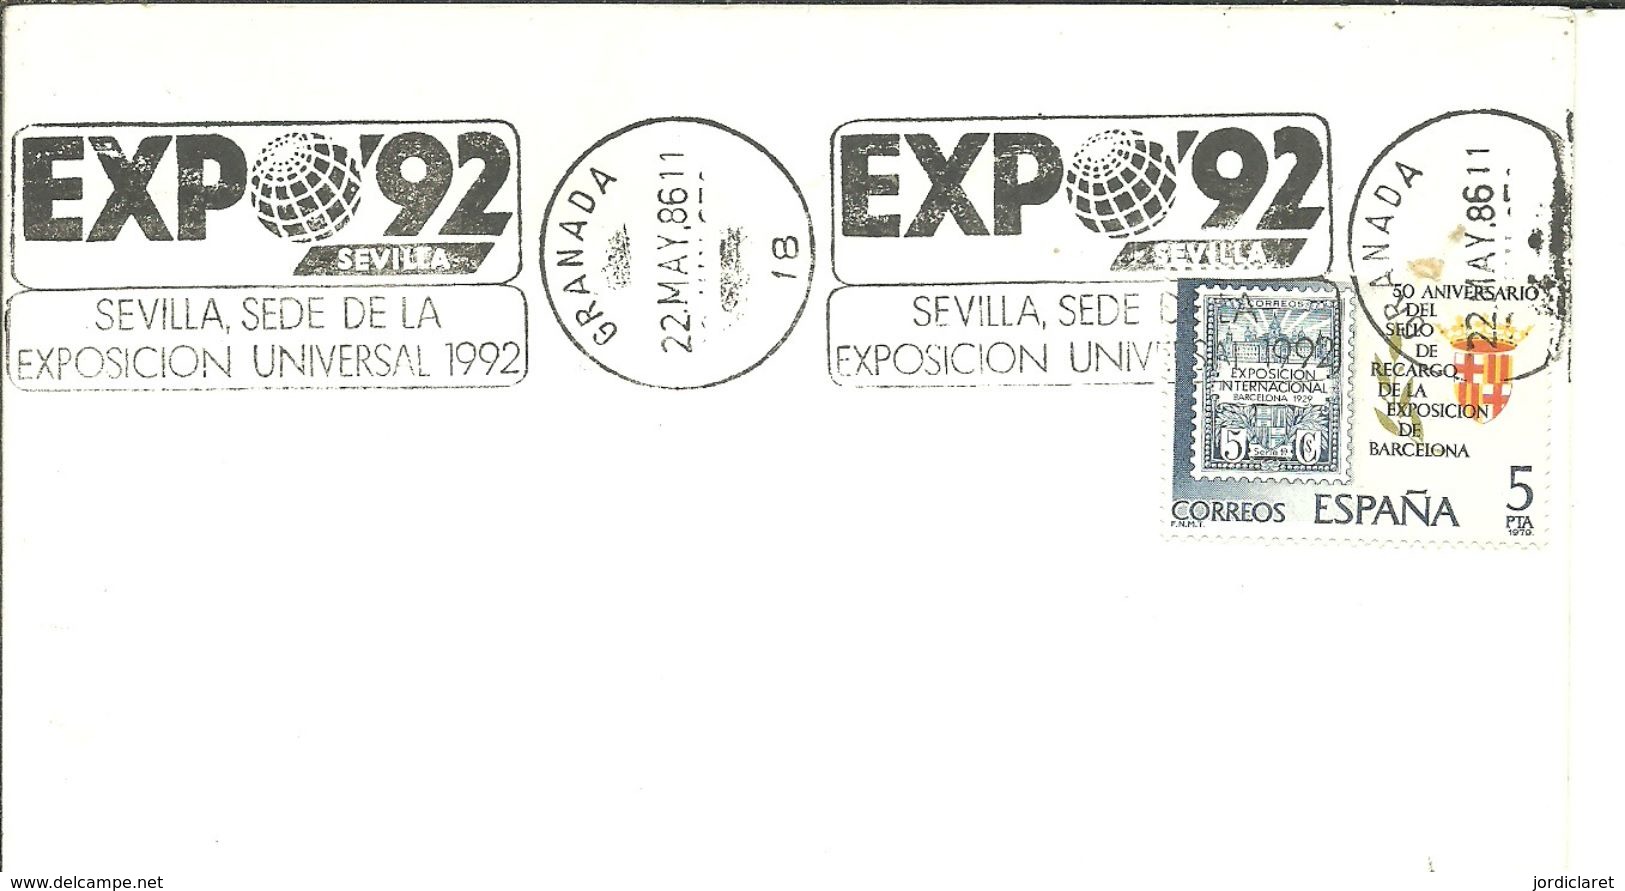 POSMARKET ESPAÑA HUELVA - 1992 – Sevilla (Spanien)